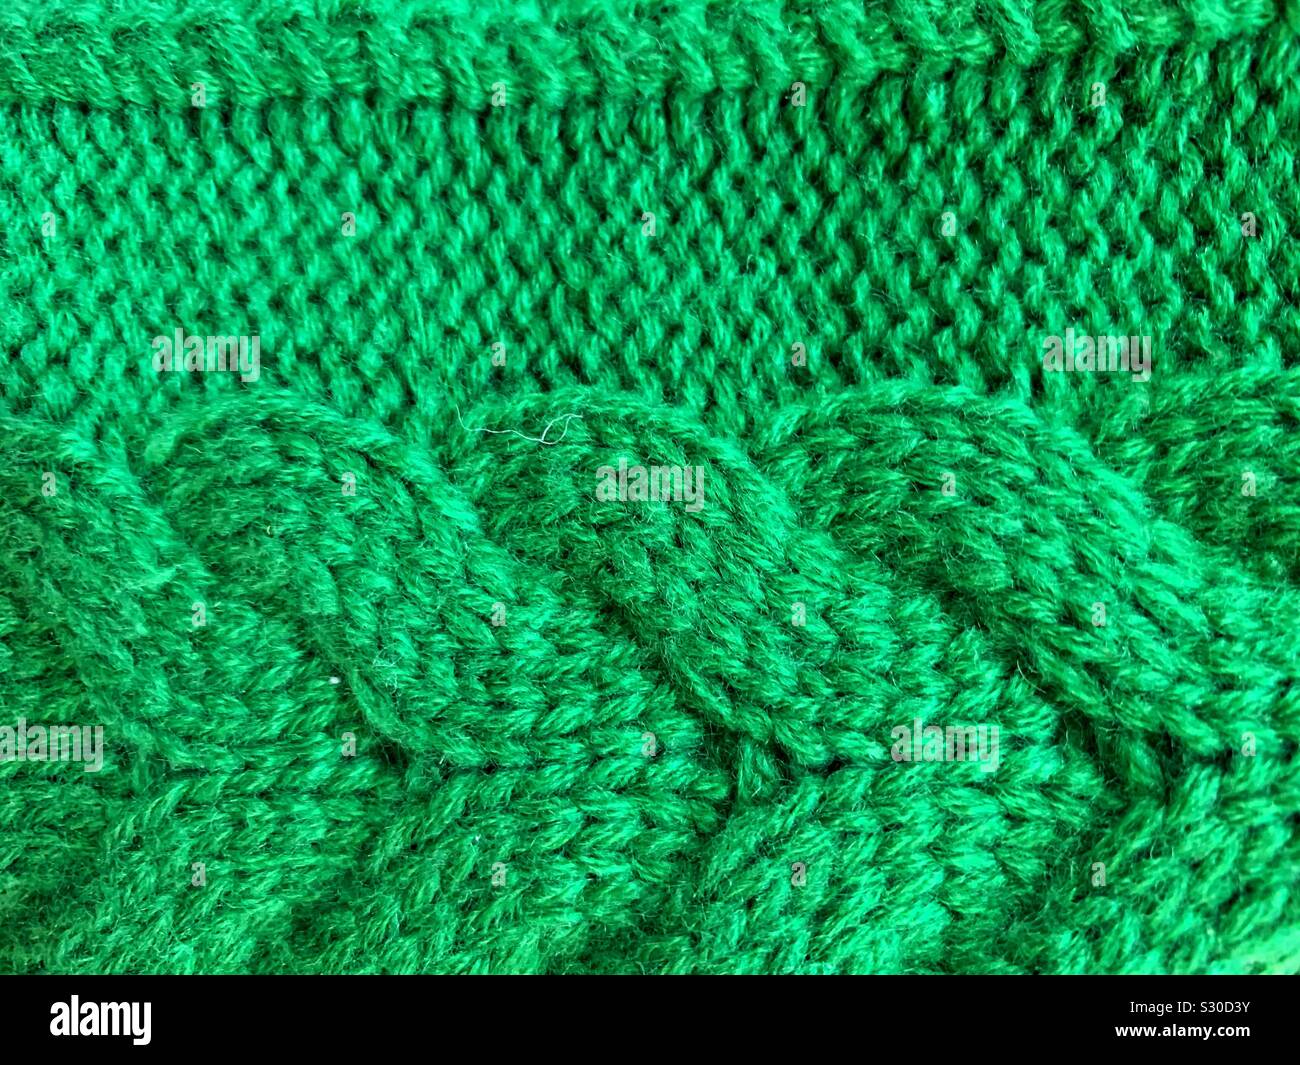 Beautiful bubble stitch crochet bag | Crochet handbags patterns, Crochet bag,  Crochet handbags